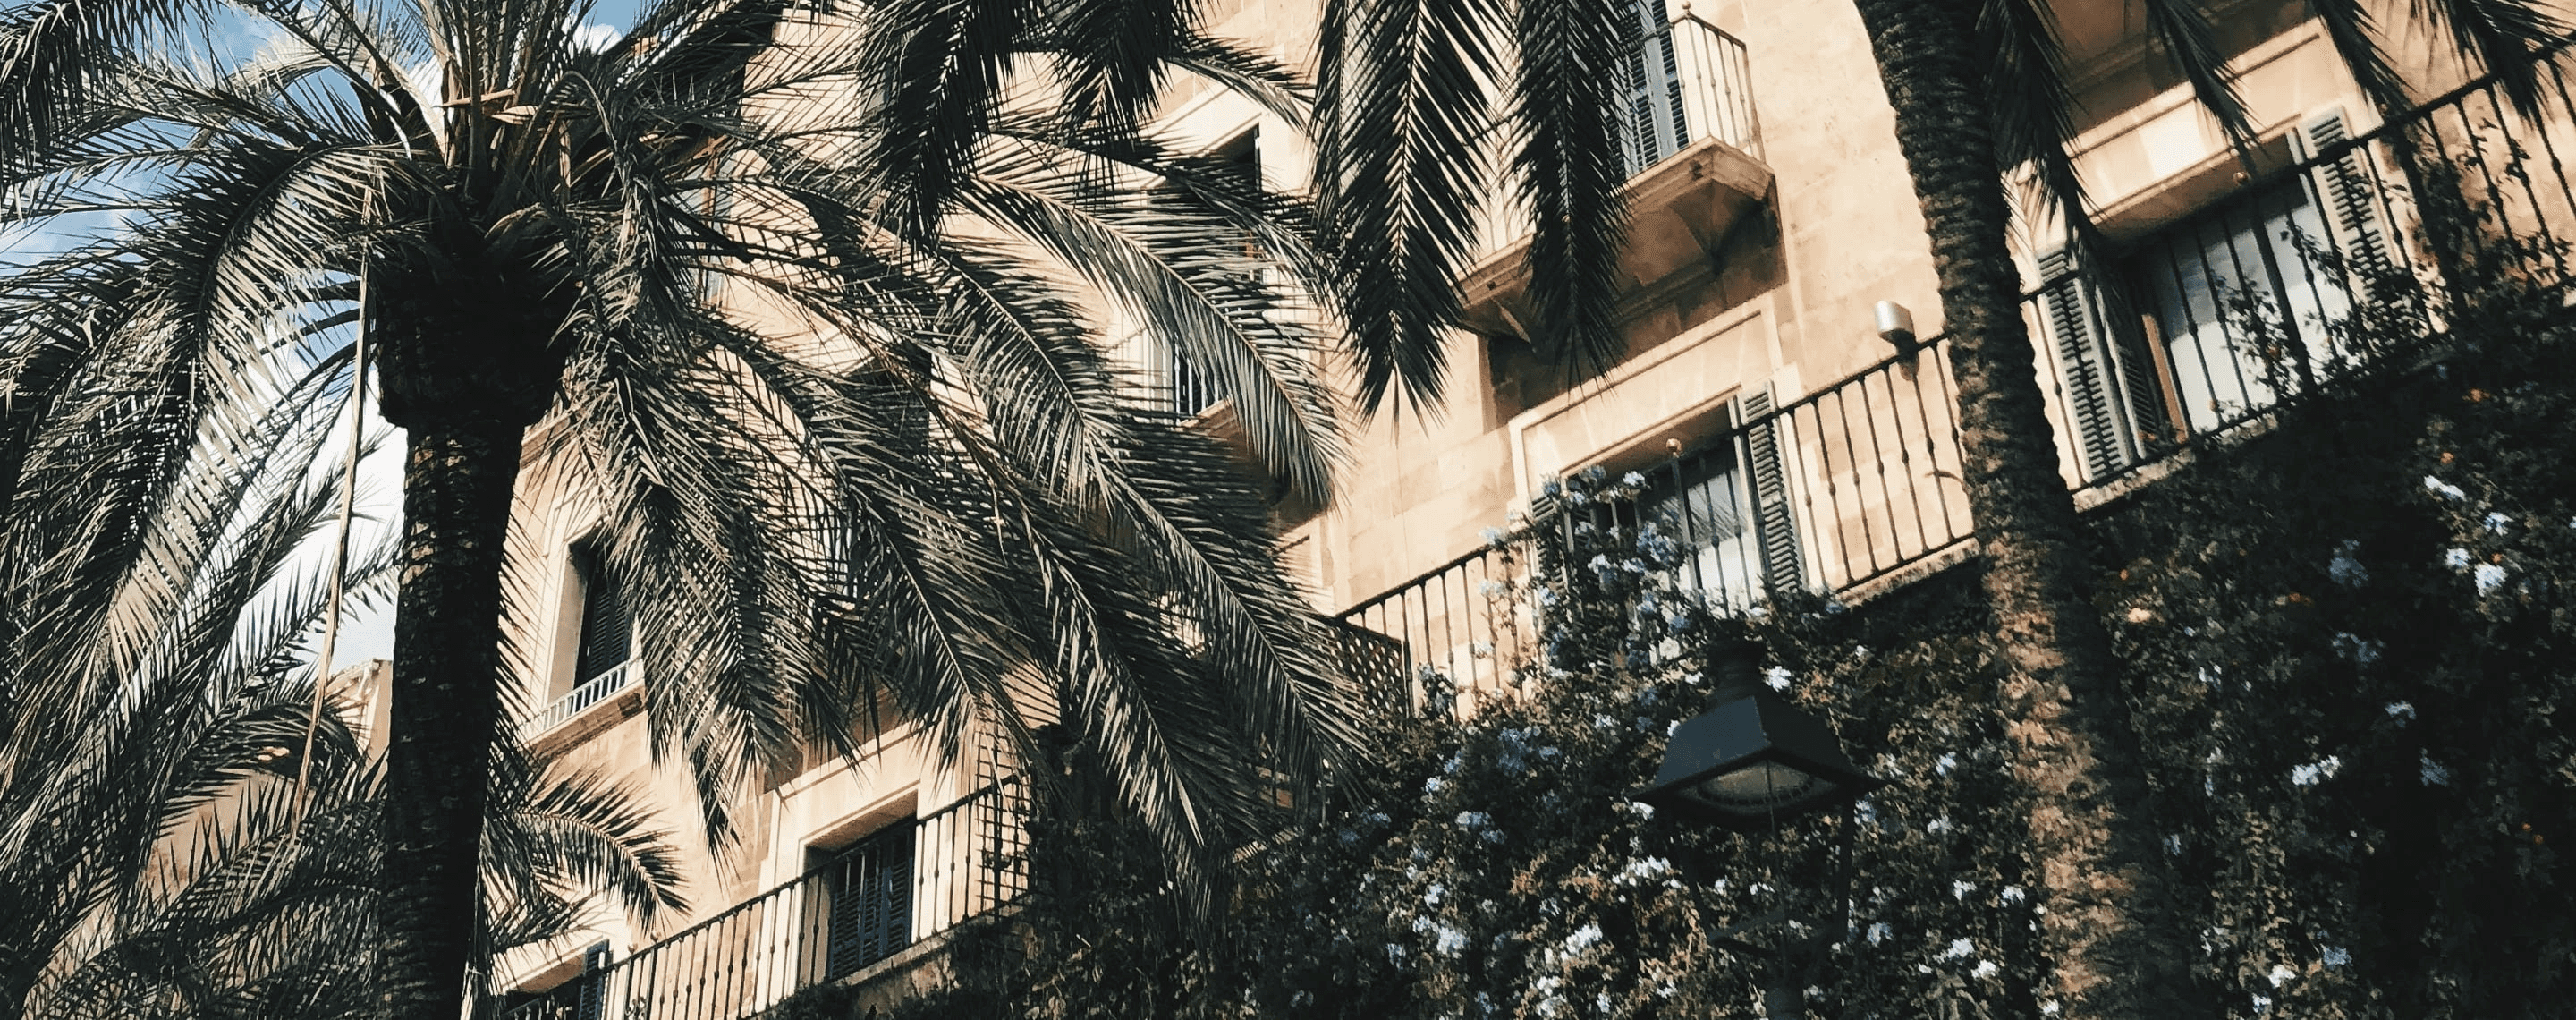 Palmen und Gebäude im Stadtteil Can Pastilla in Palma de Mallorca